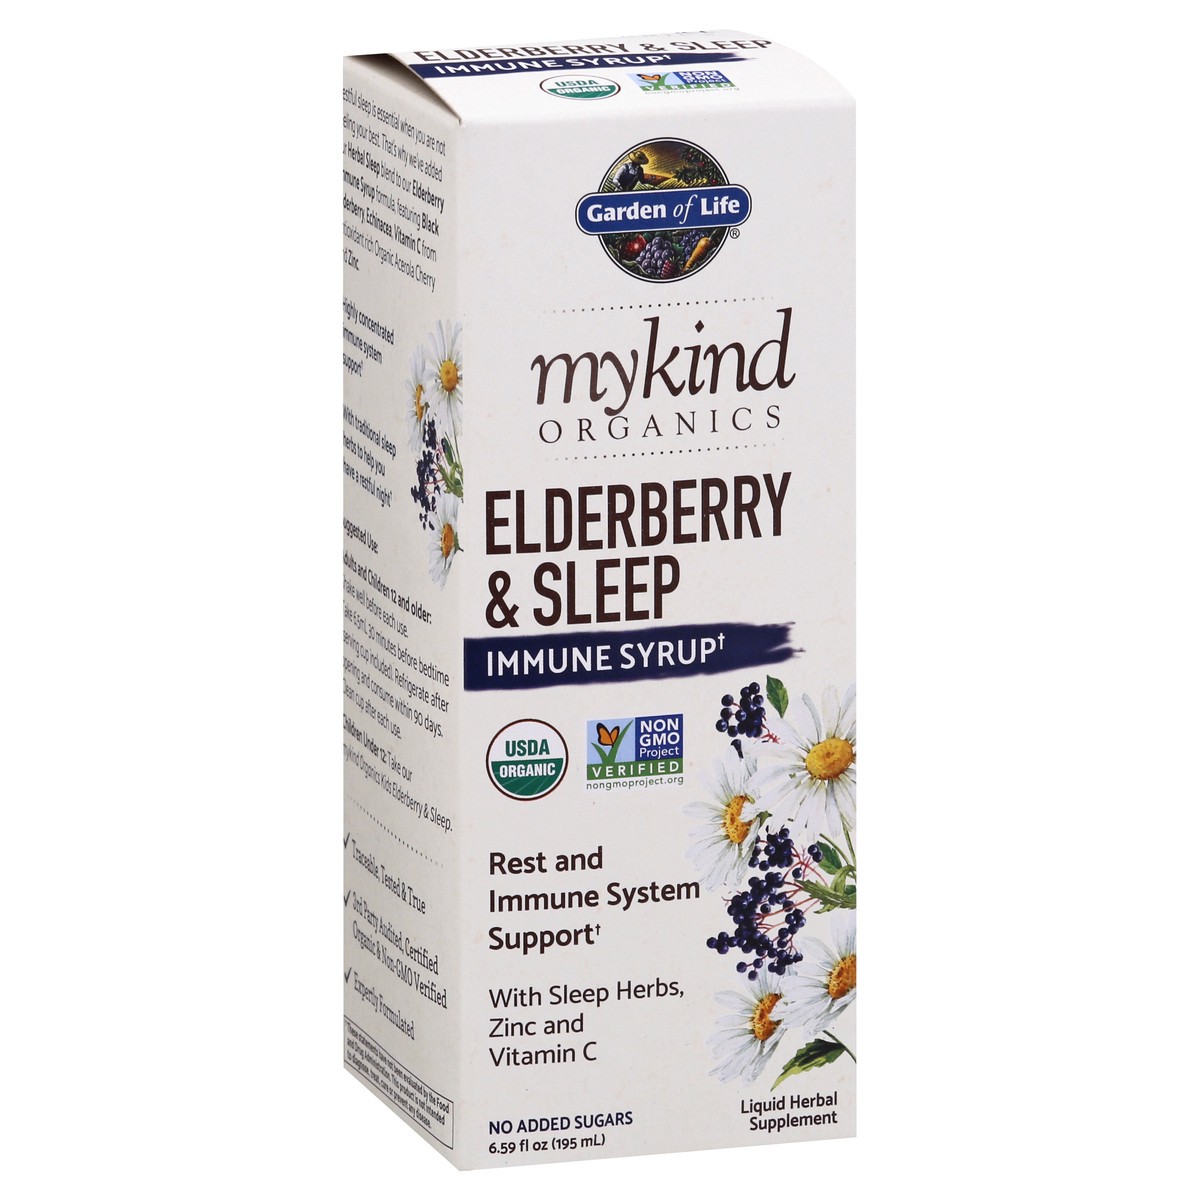 slide 2 of 9, Mykind Organics Elderberry & Sleep Immune Syrup, 6.59 oz